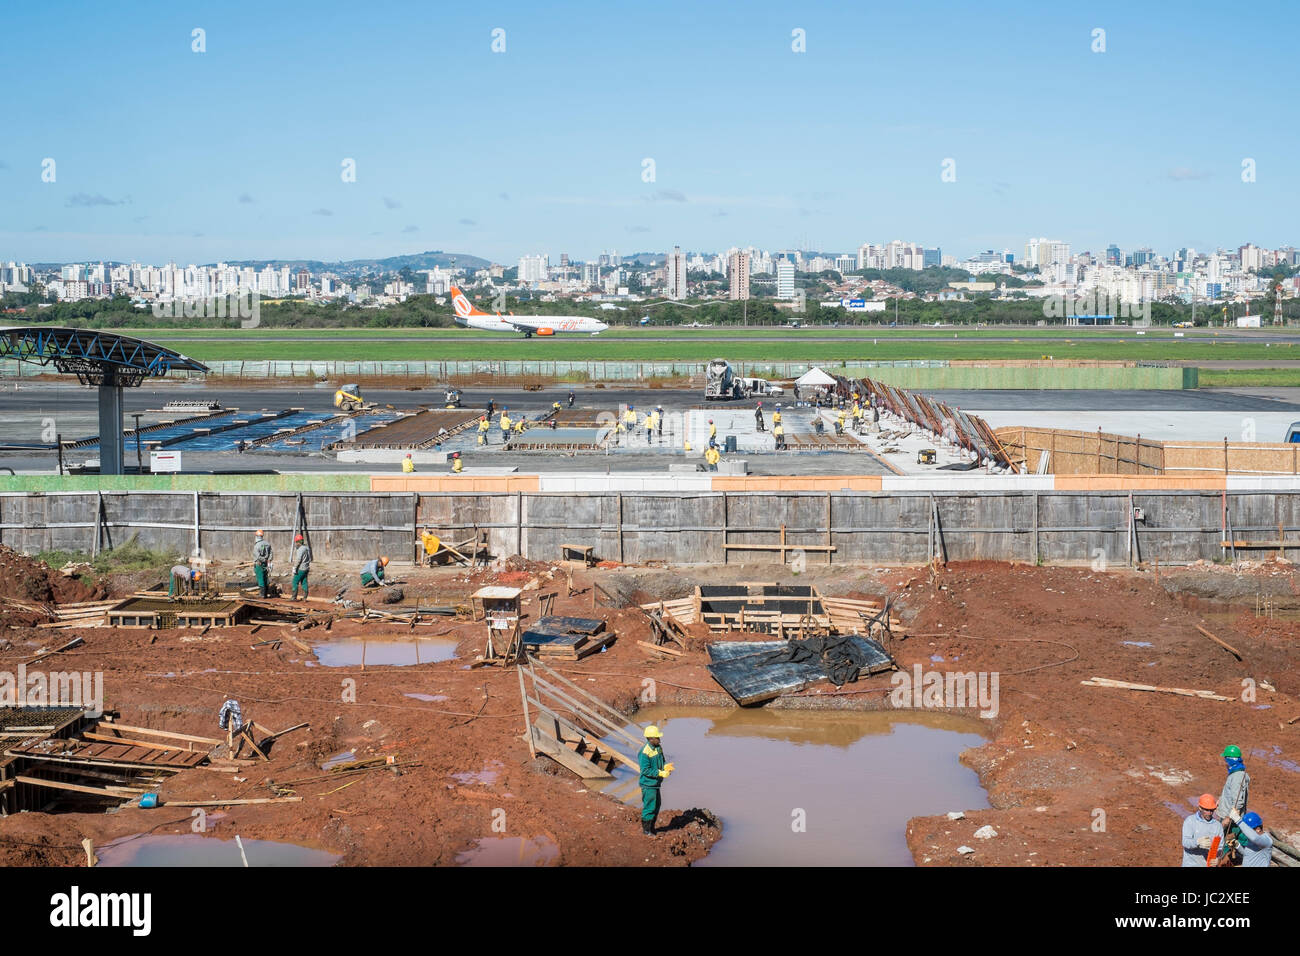 PORTO ALEGRE, Brasilien - 25 Juli: Eine brasilianische Flugzeug landet neben Salgado Filhos Flughafen Erweiterungsarbeiten. Die Erweiterung soll im Mai für die WM fertig sein, aber eine Reihe von Arbeitskämpfen der neuen Fertigstellung voraussichtlich 2016. 25. Juli 2014 in Porto Alegre, Brasilien. Stockfoto